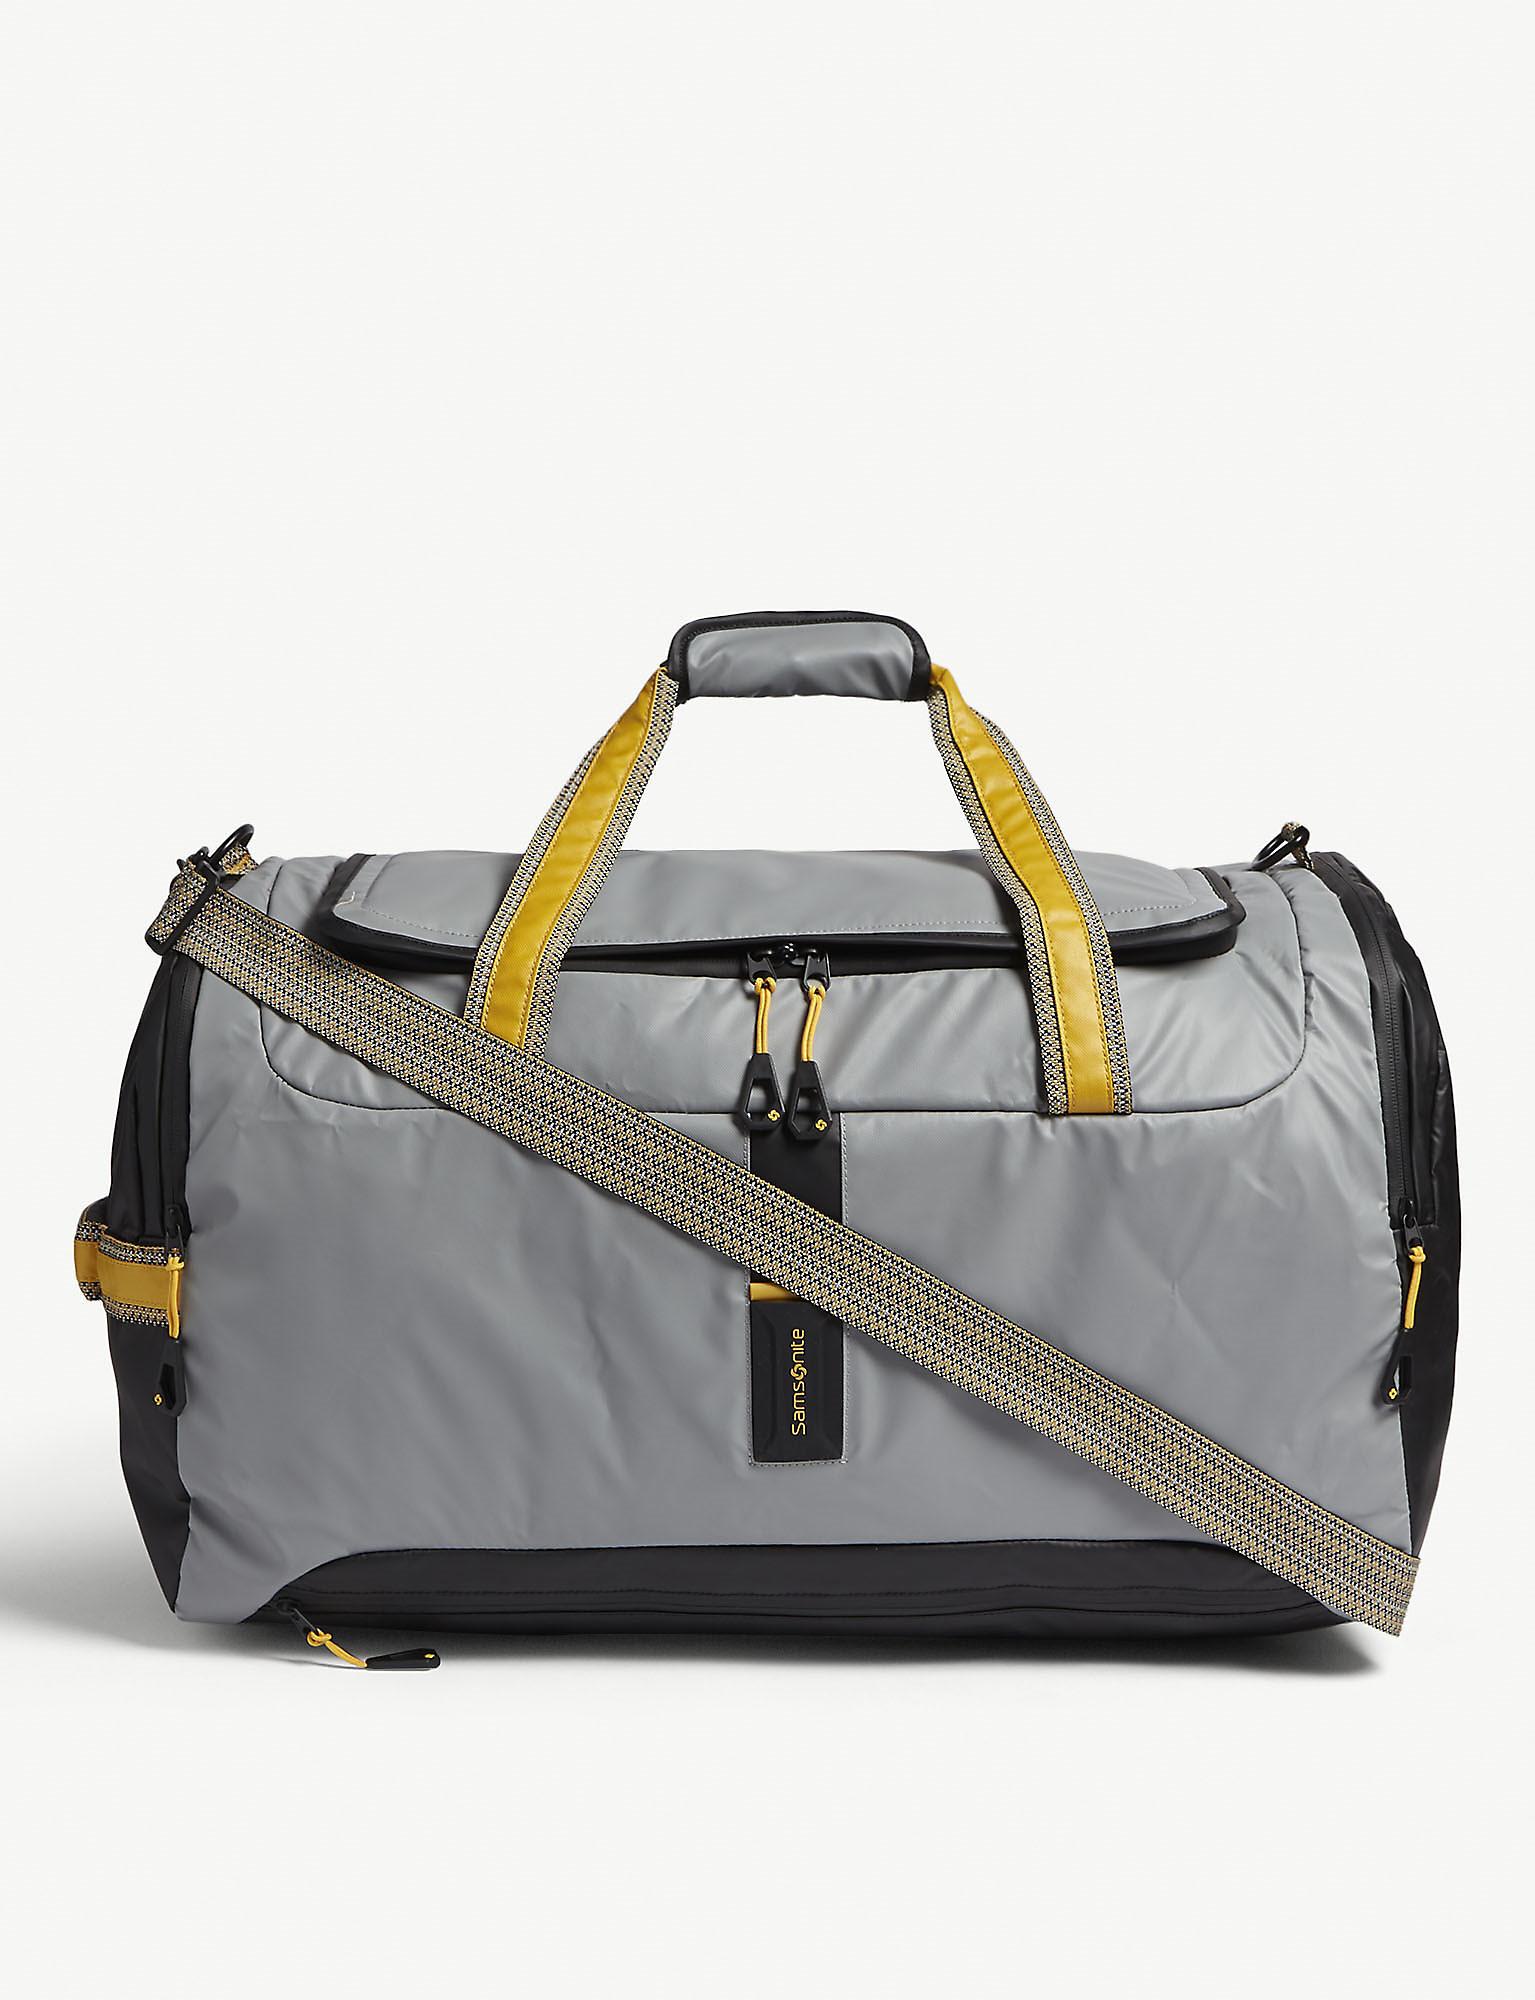 Samsonite Paradiver Light Duffle Bag in Gray for Men - Lyst